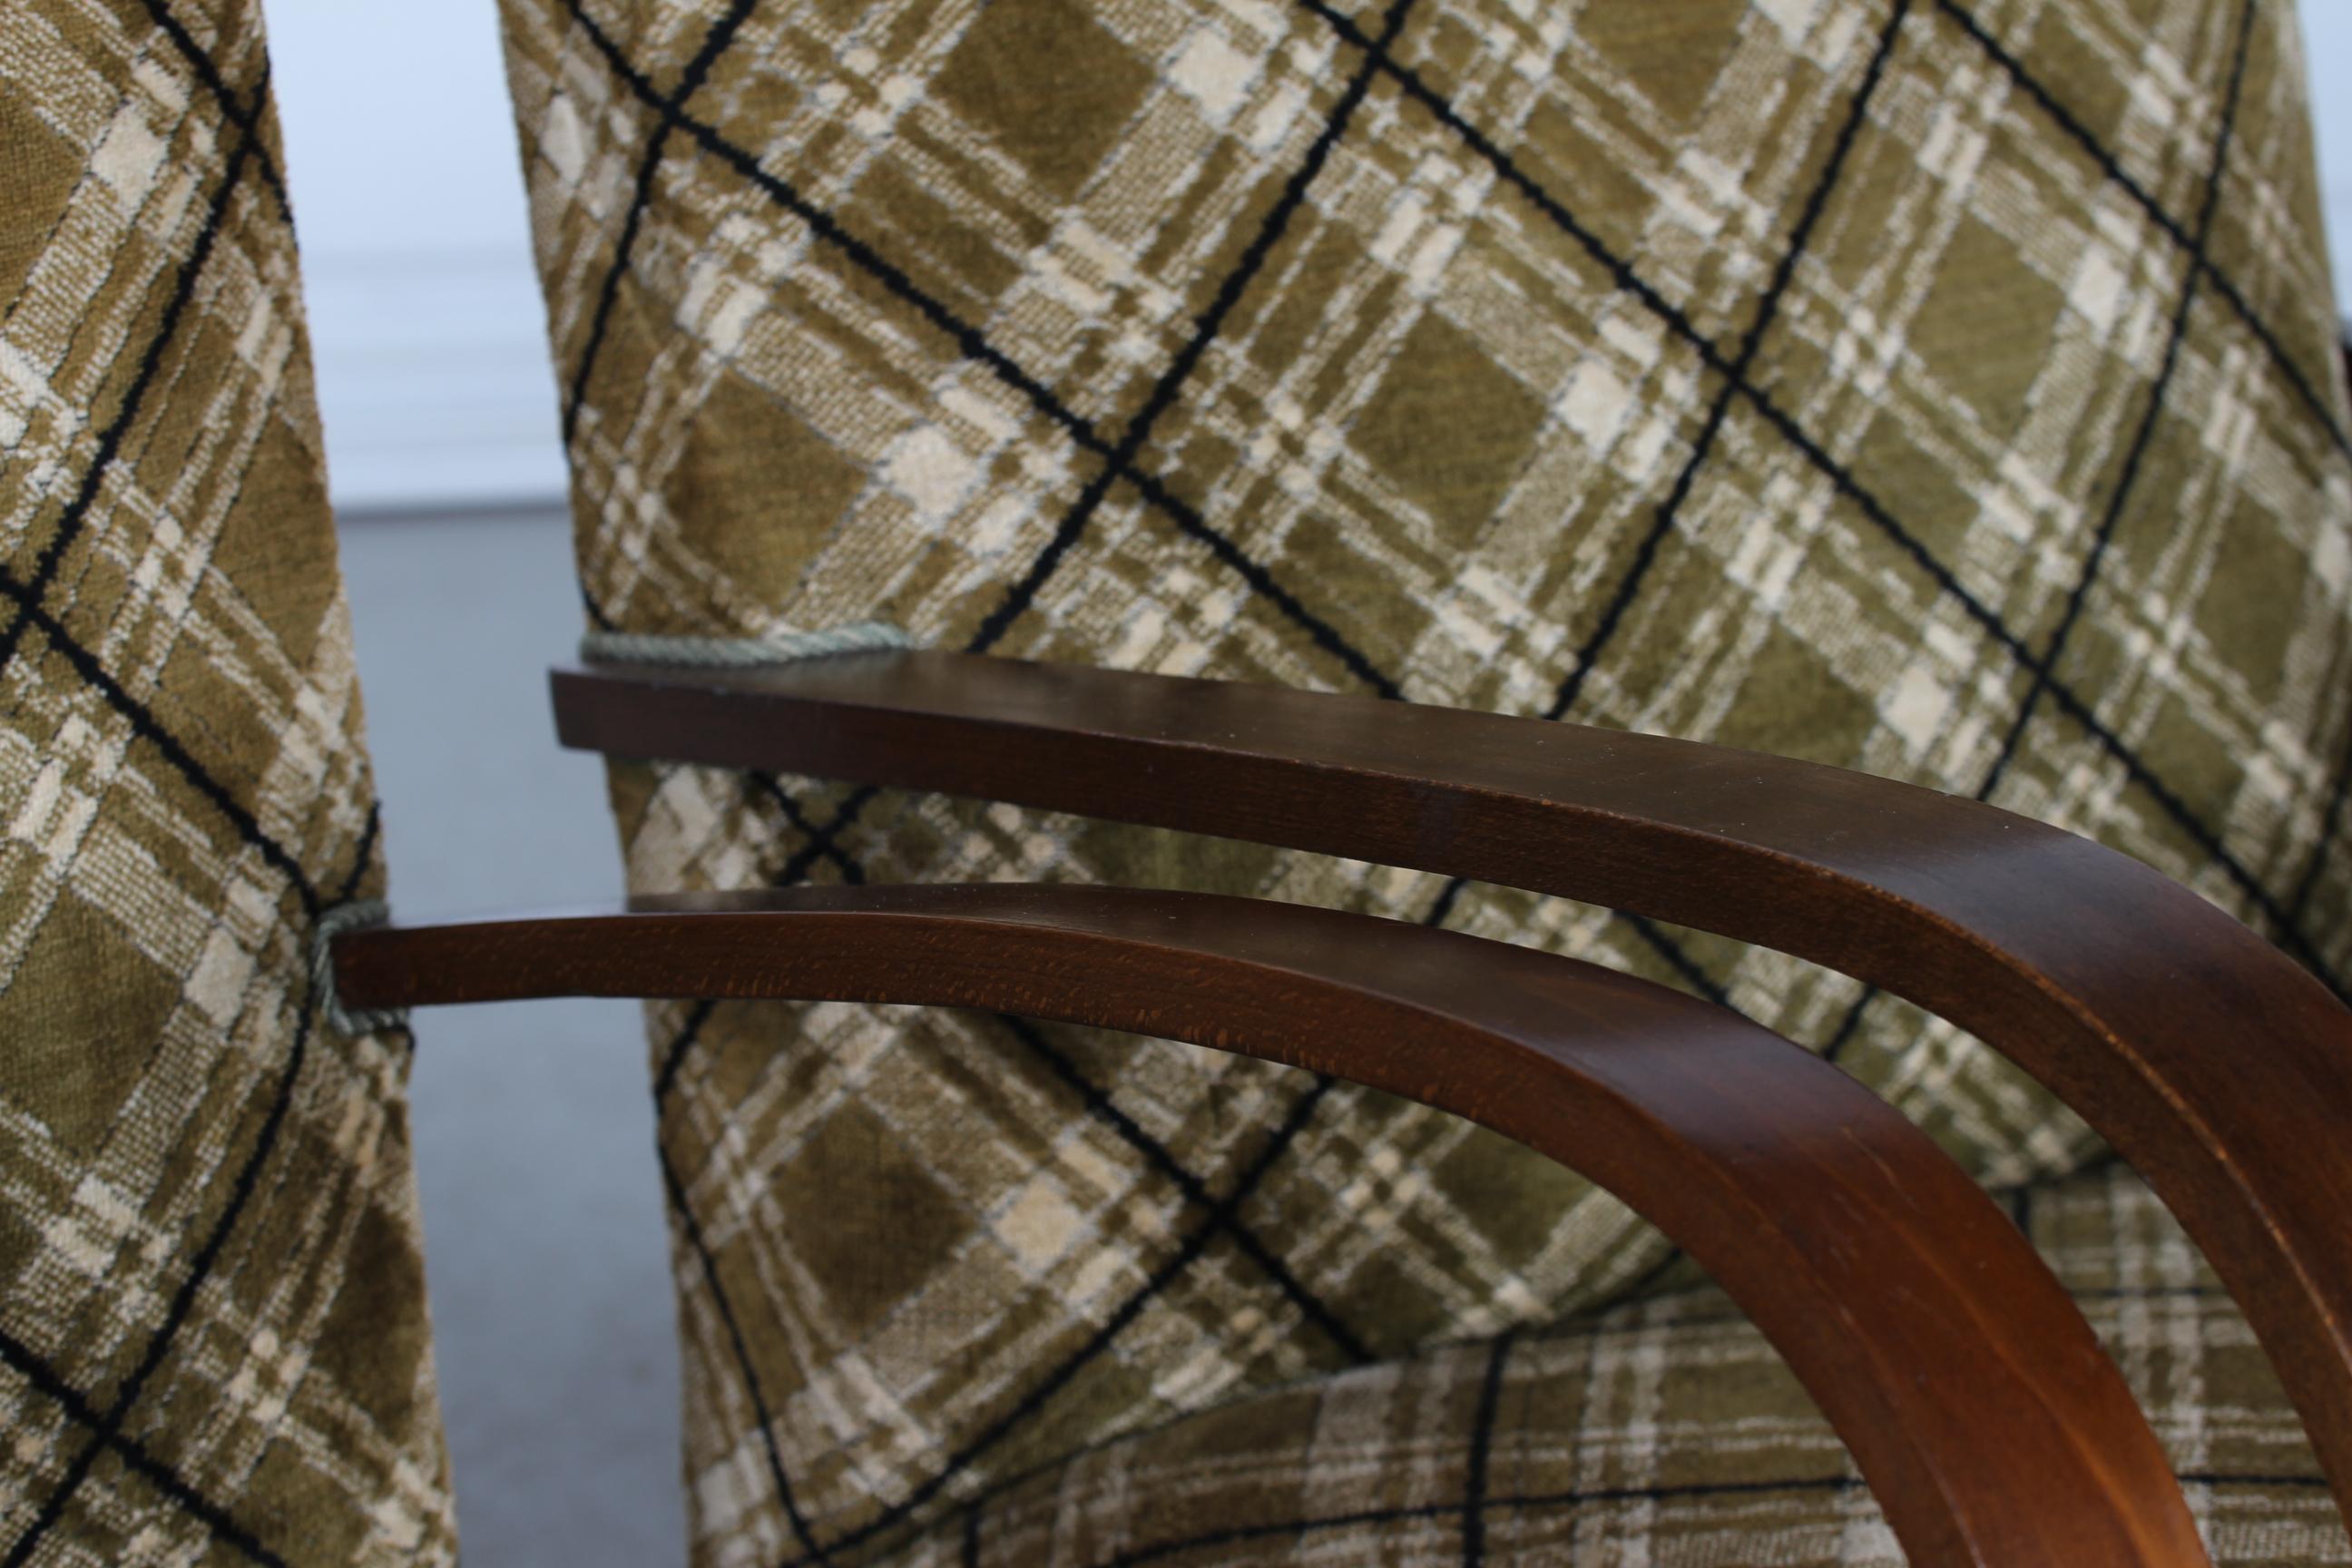 2 Fauteuils club ou lounge presque identiques, fabriqués au Danemark dans les années 1930-1940. 

Les cadres sont en bois courbé à la vapeur et teinté foncé, recouverts de velours à carreaux dans les couleurs marron, beige et noir.

La chaise